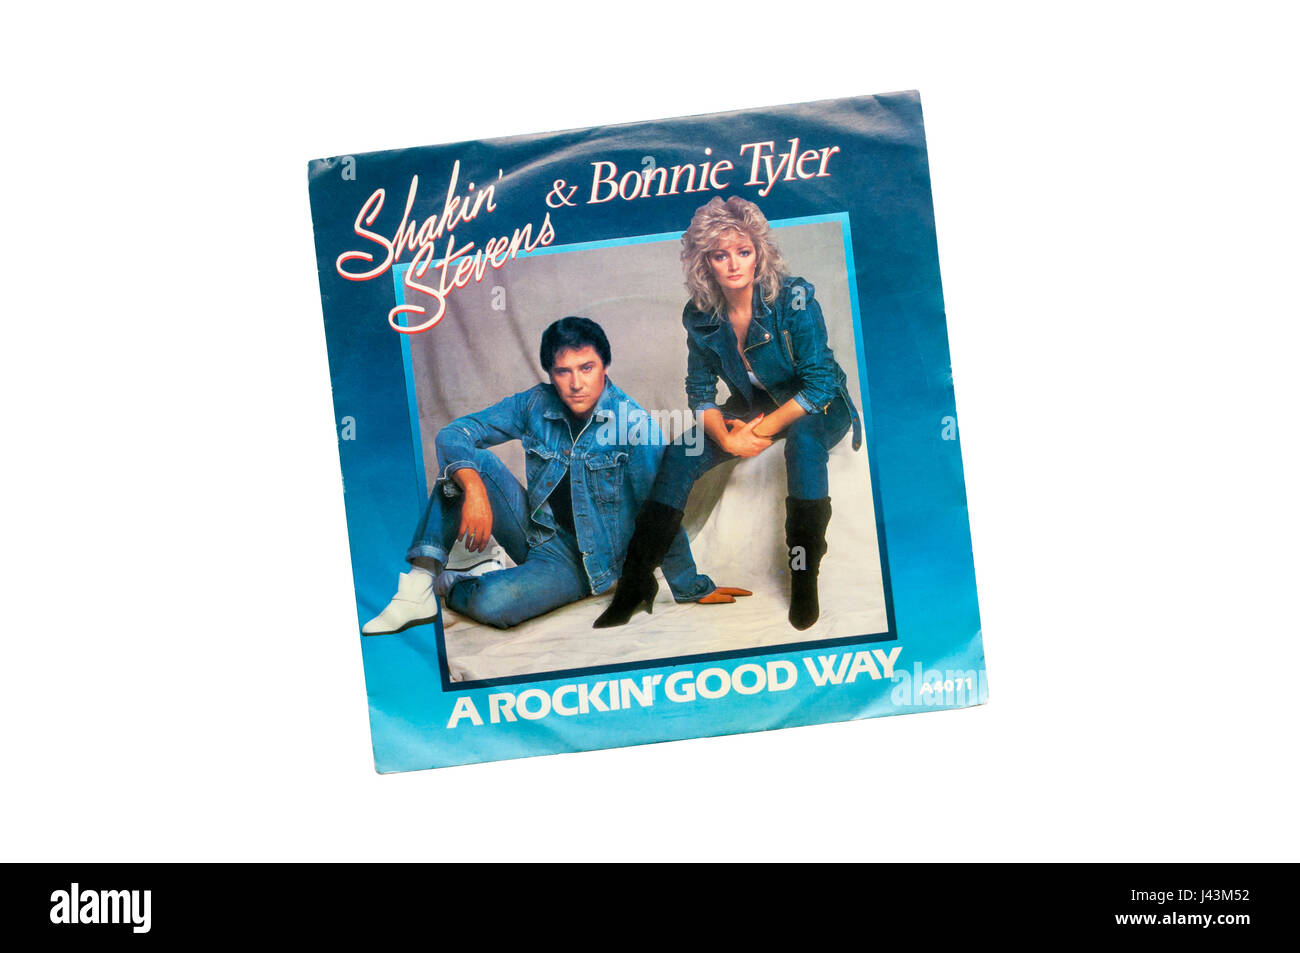 1983 7' seul, un bon moyen de rockin' par Shakin' Steven & Bonnie Tyler. Banque D'Images